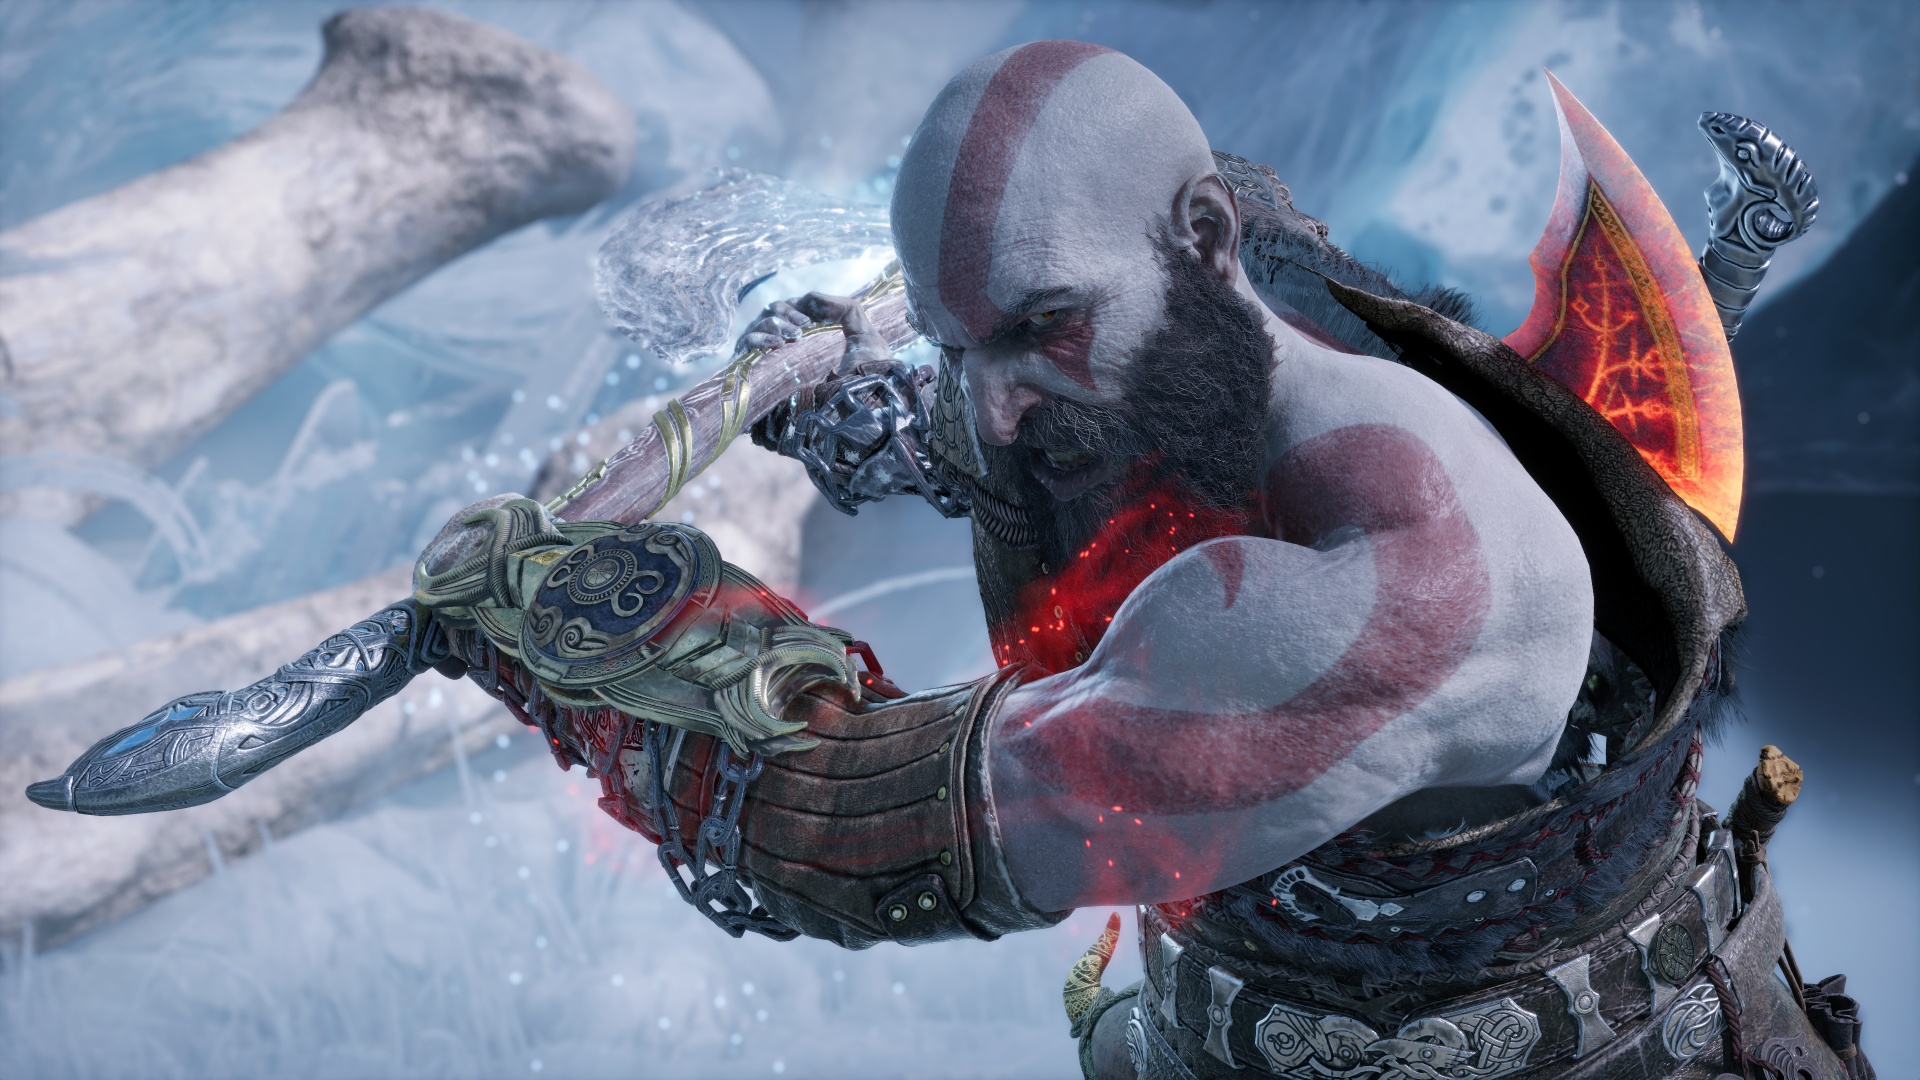 Wallpaper God of War Kratos Playstation 4 pc Game Mythology Background   Download Free Image